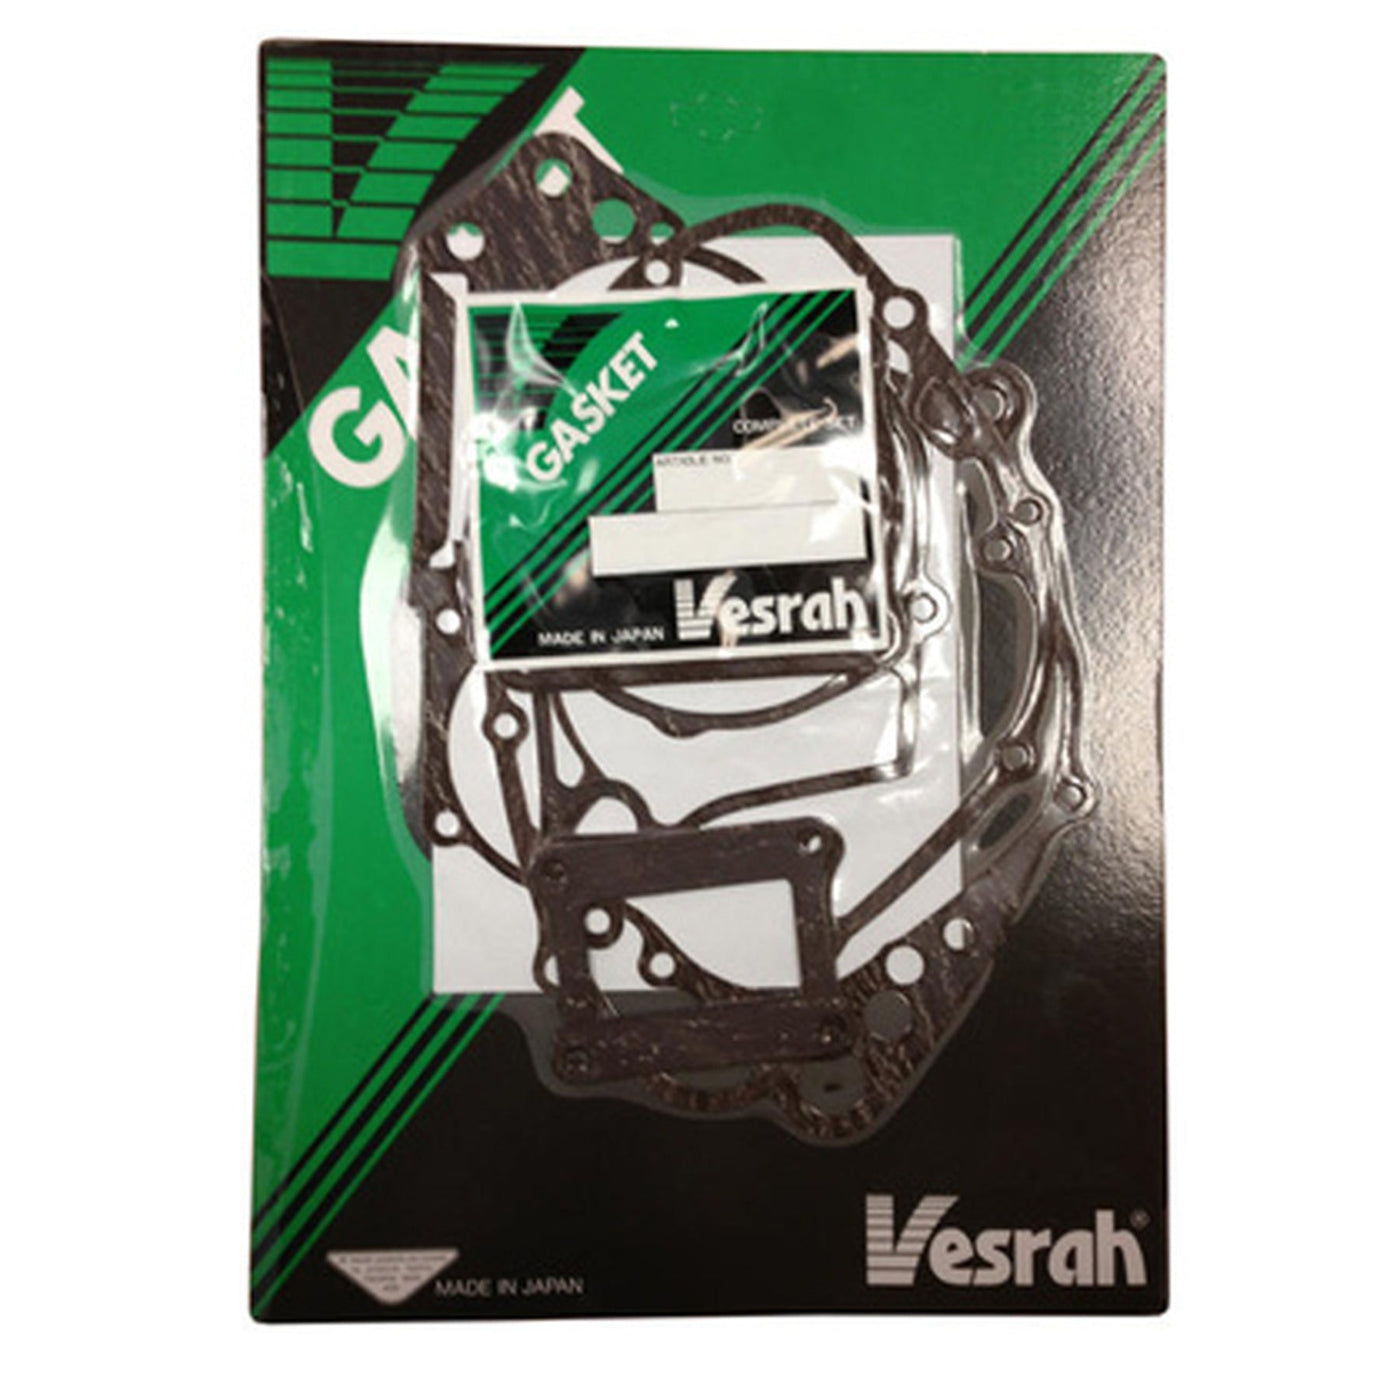 Vesrah VG-290 Complete Gasket Kit #VG-290